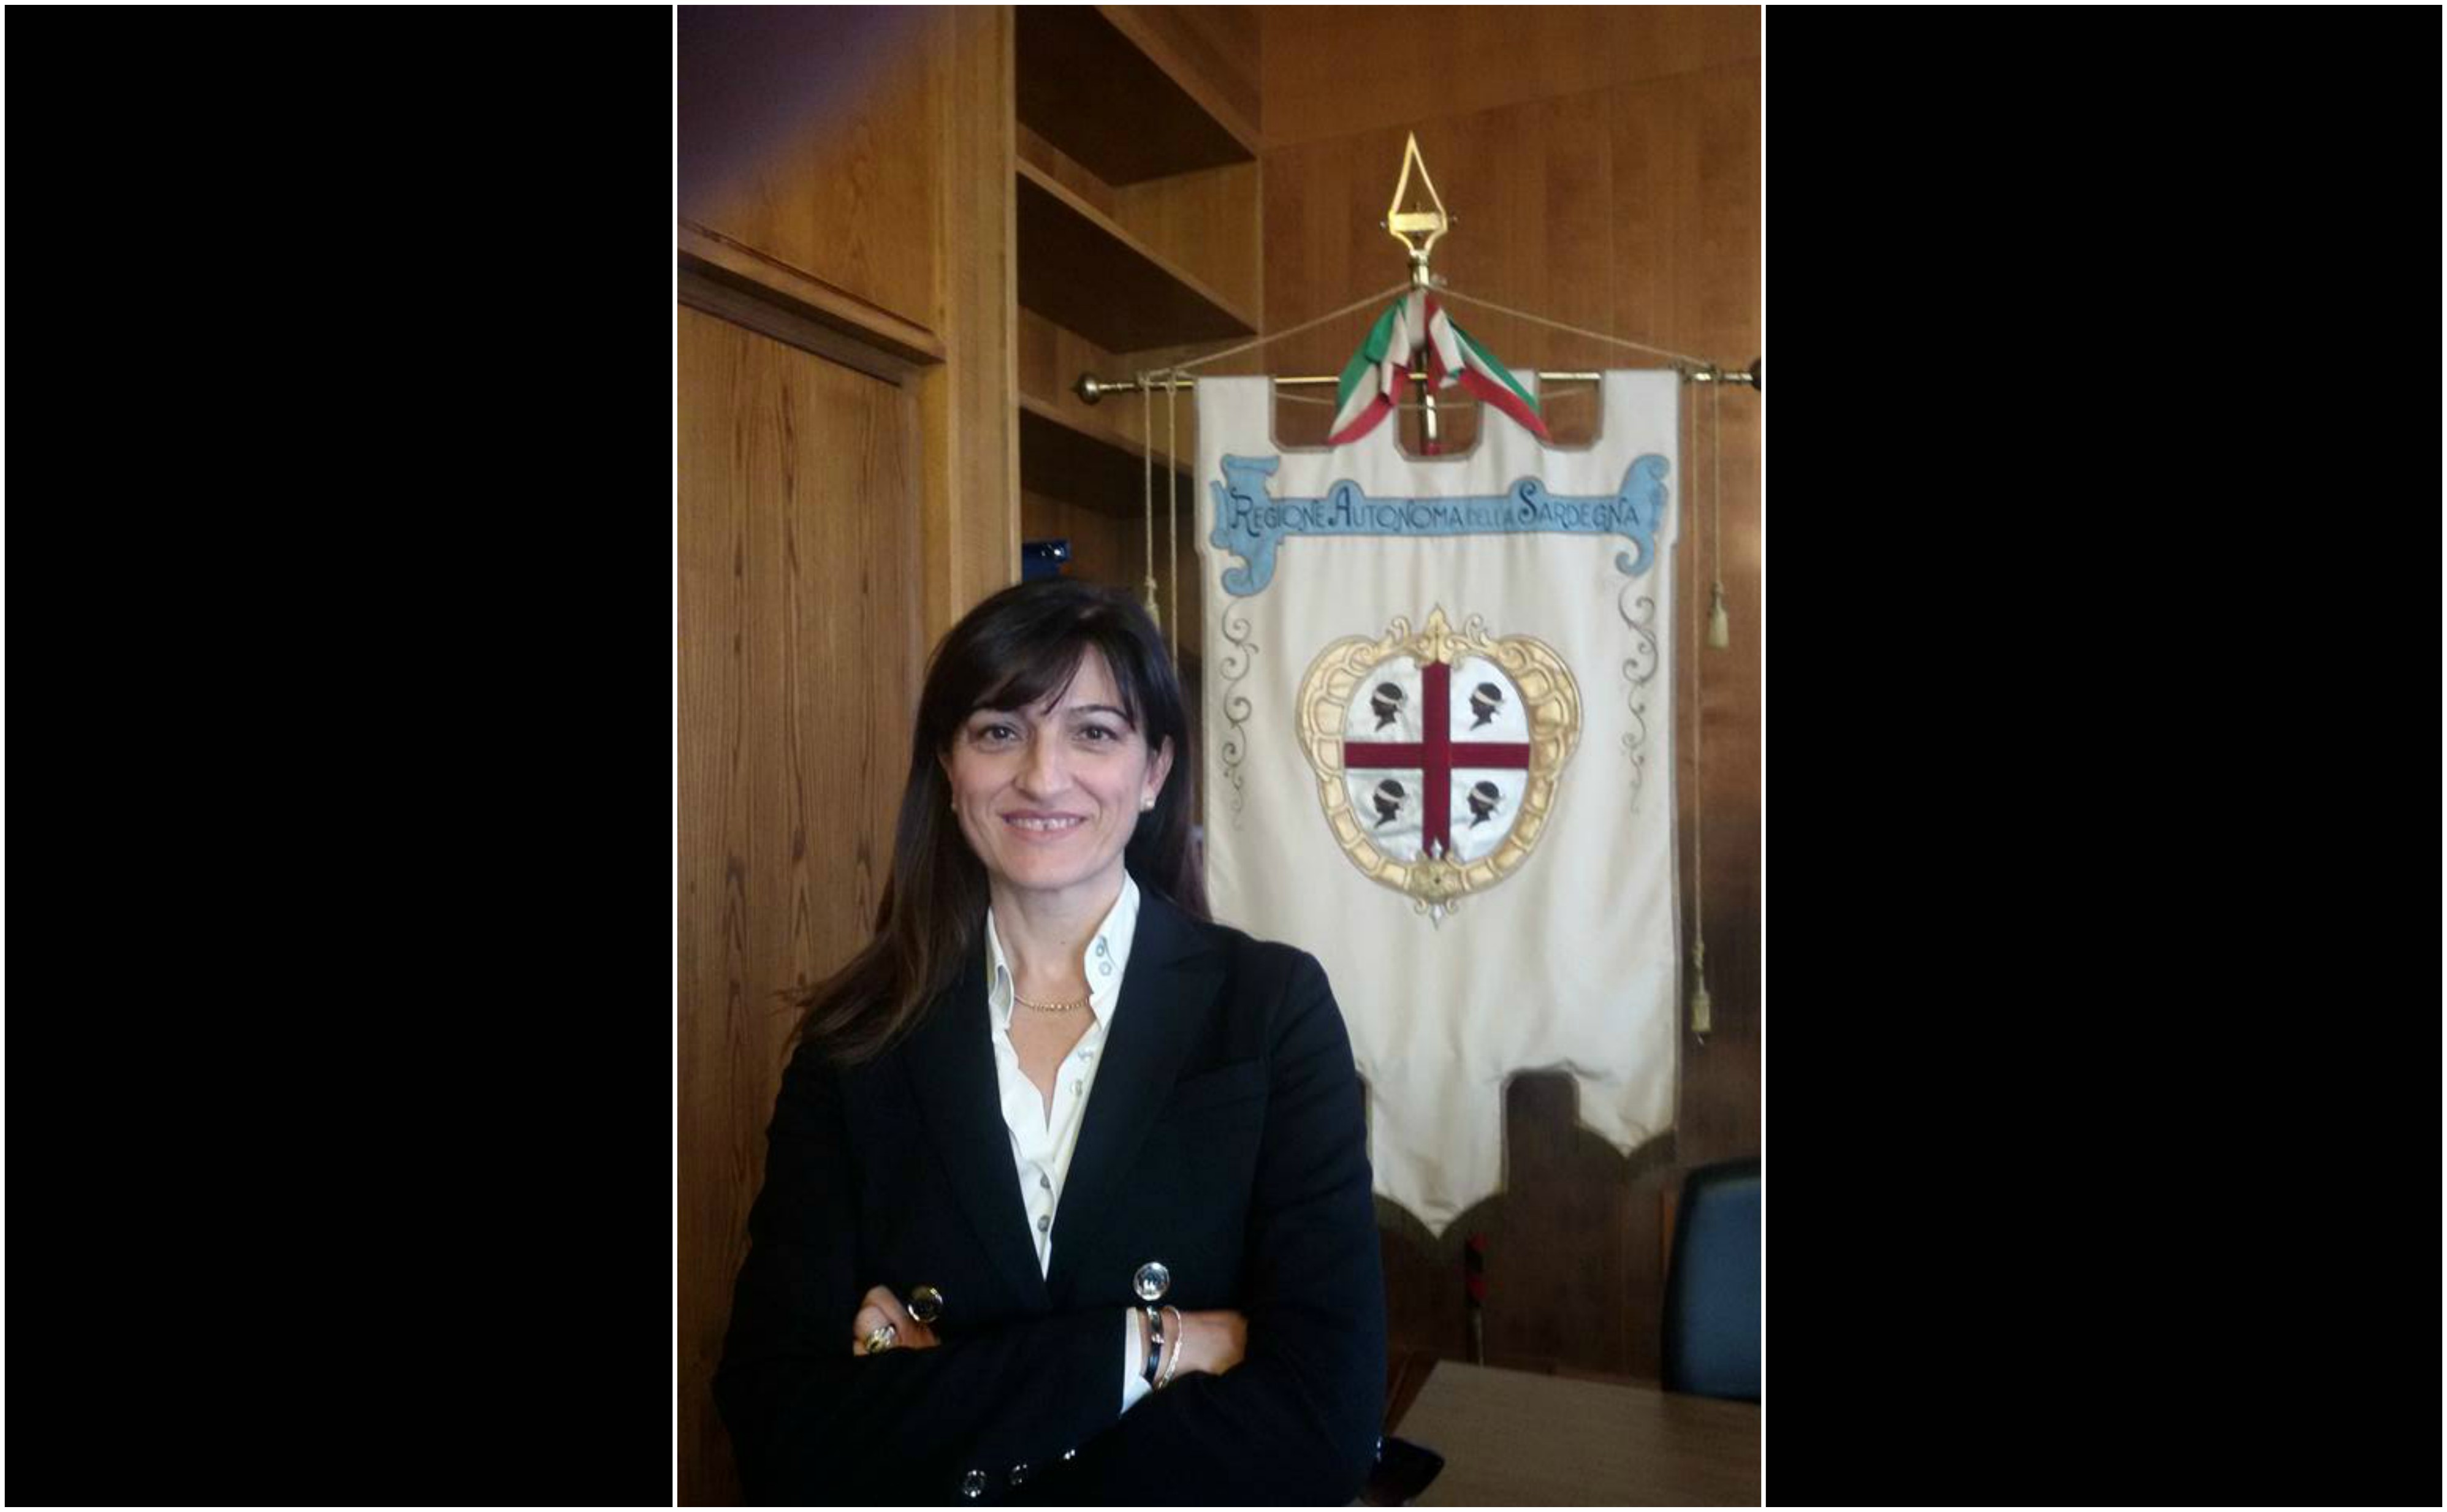 Psd'Az Olbia: Tribunale Cagliari sospende espulsione di Lidia Fancello